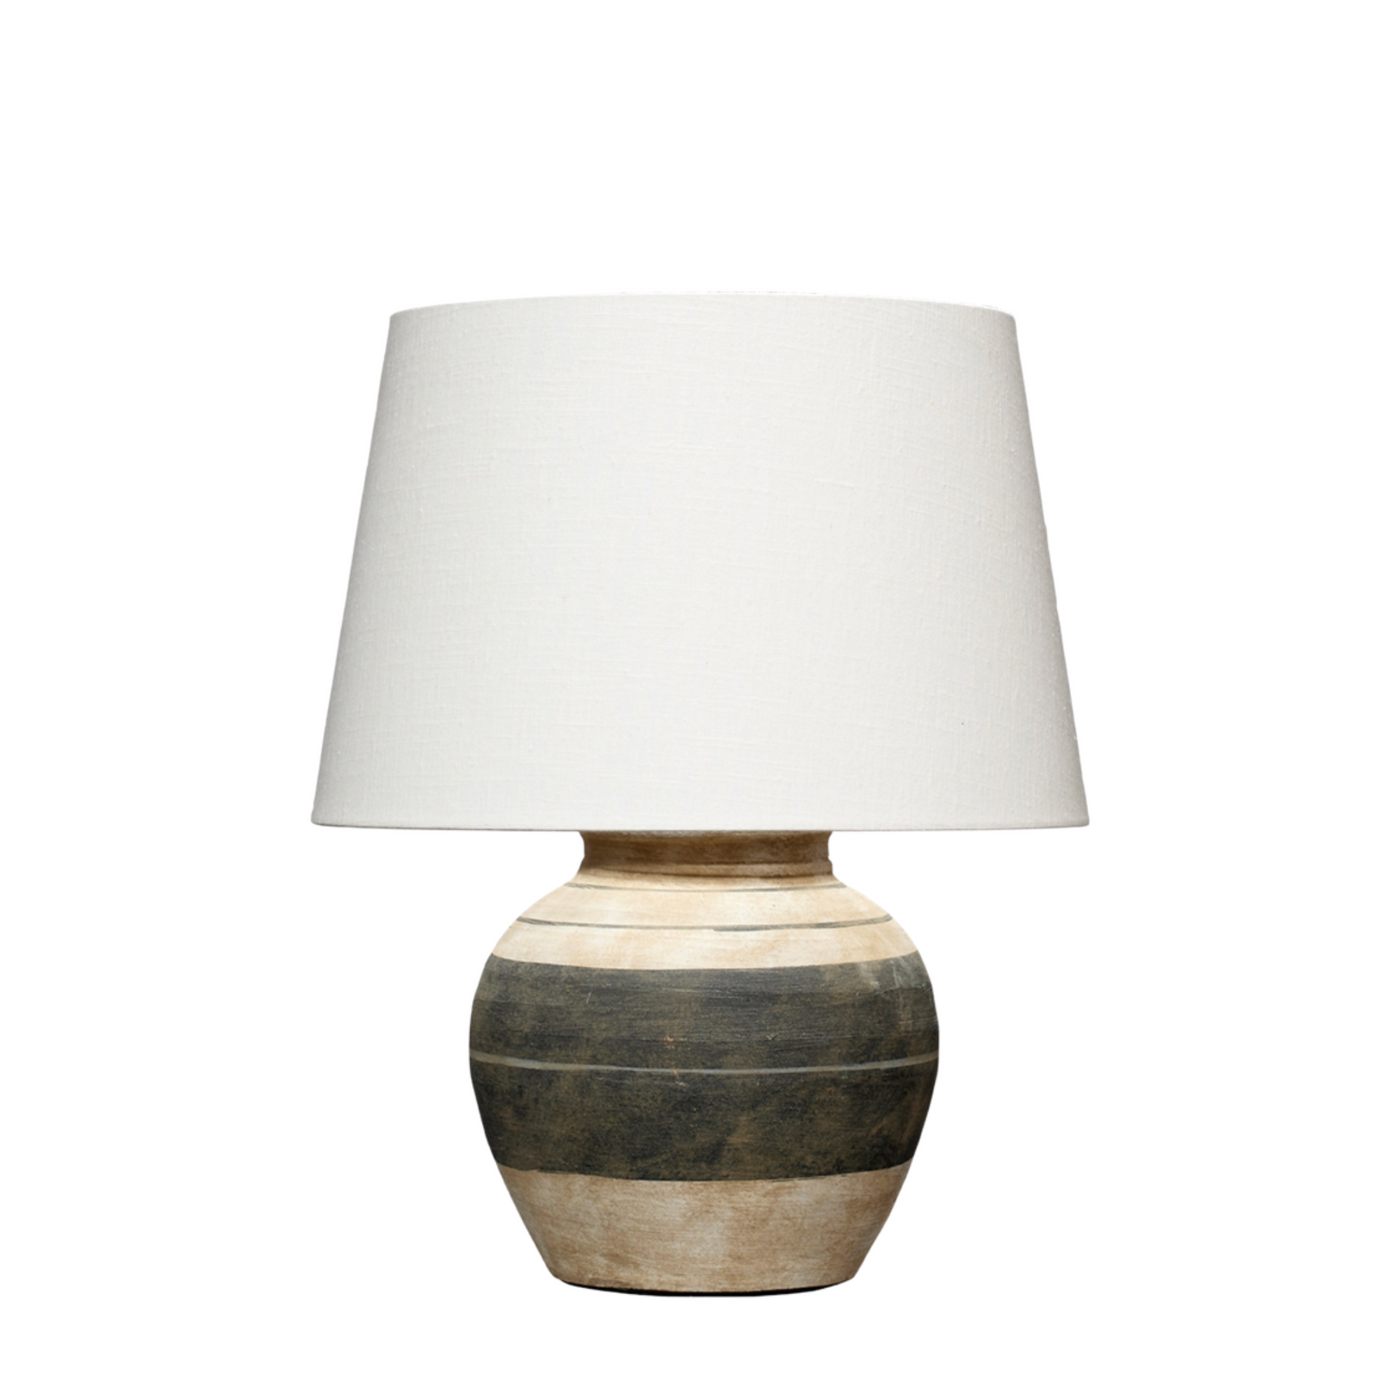 Bernard Table Lamp | Newport Lamp And Shade | Located in Newport, RI